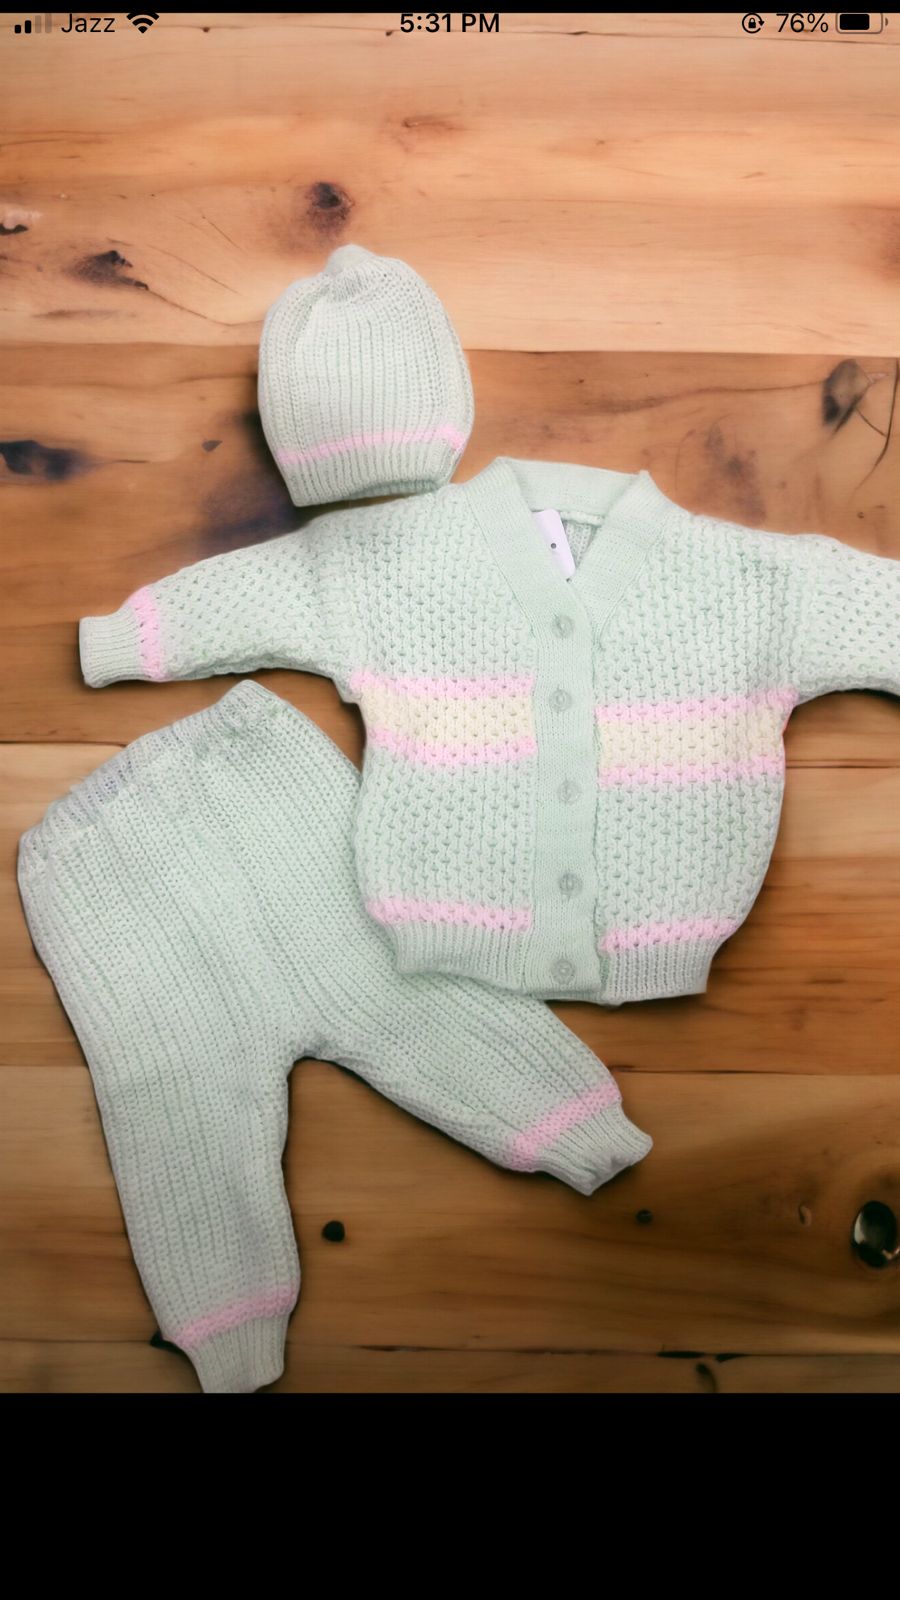 Baby woolen suits 3 pec set for newborn